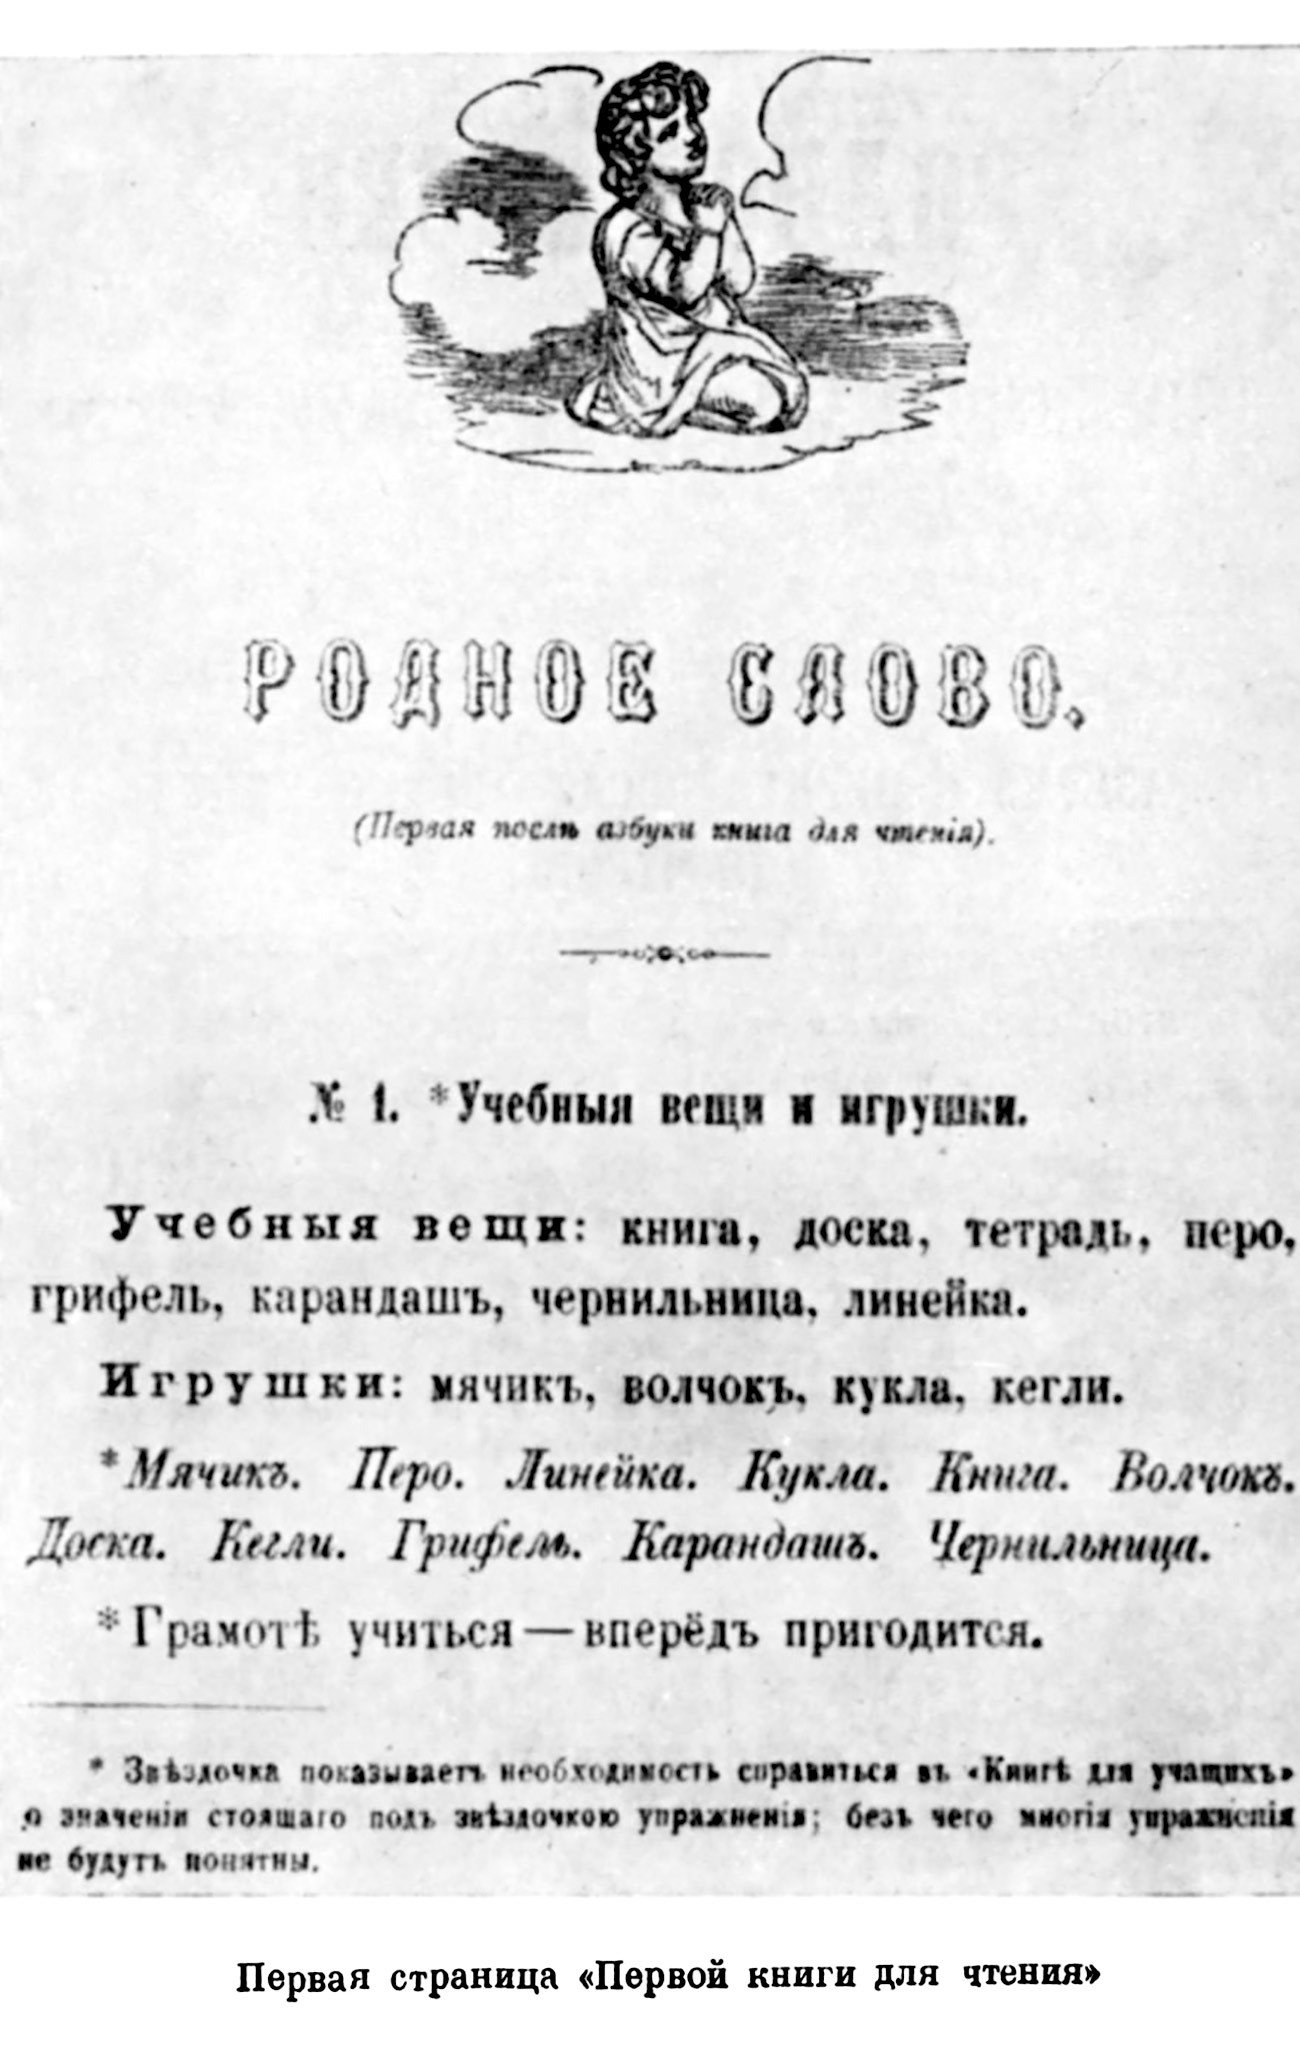 "Verwandtes Wort" - Titelseite von Tolstois Kinderfibel / Archivbild